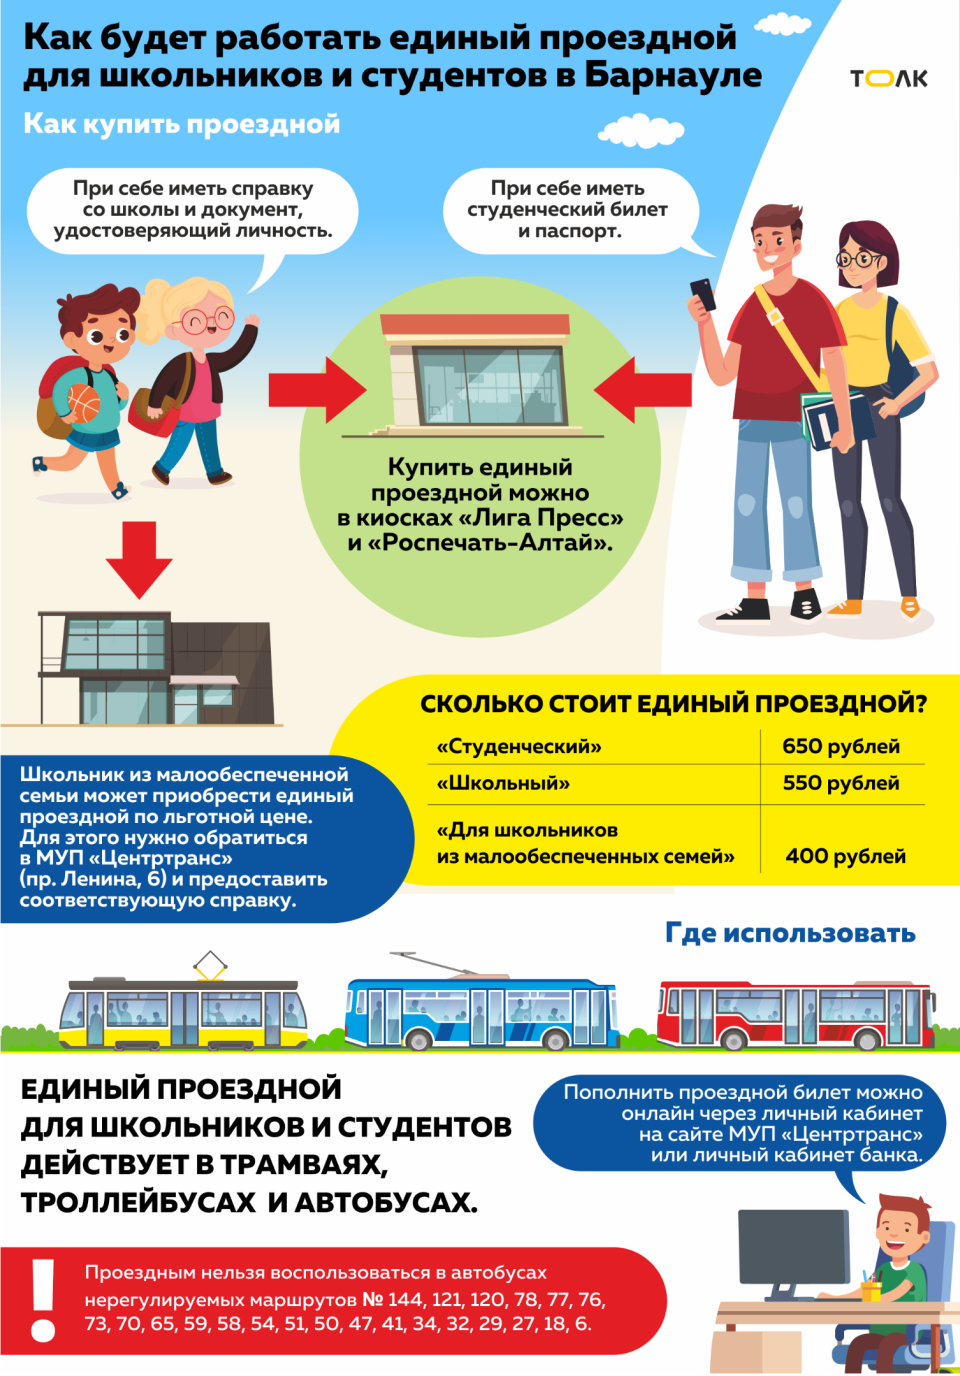 Единый проездной для школьников и студентов в Барнауле. Инфографика